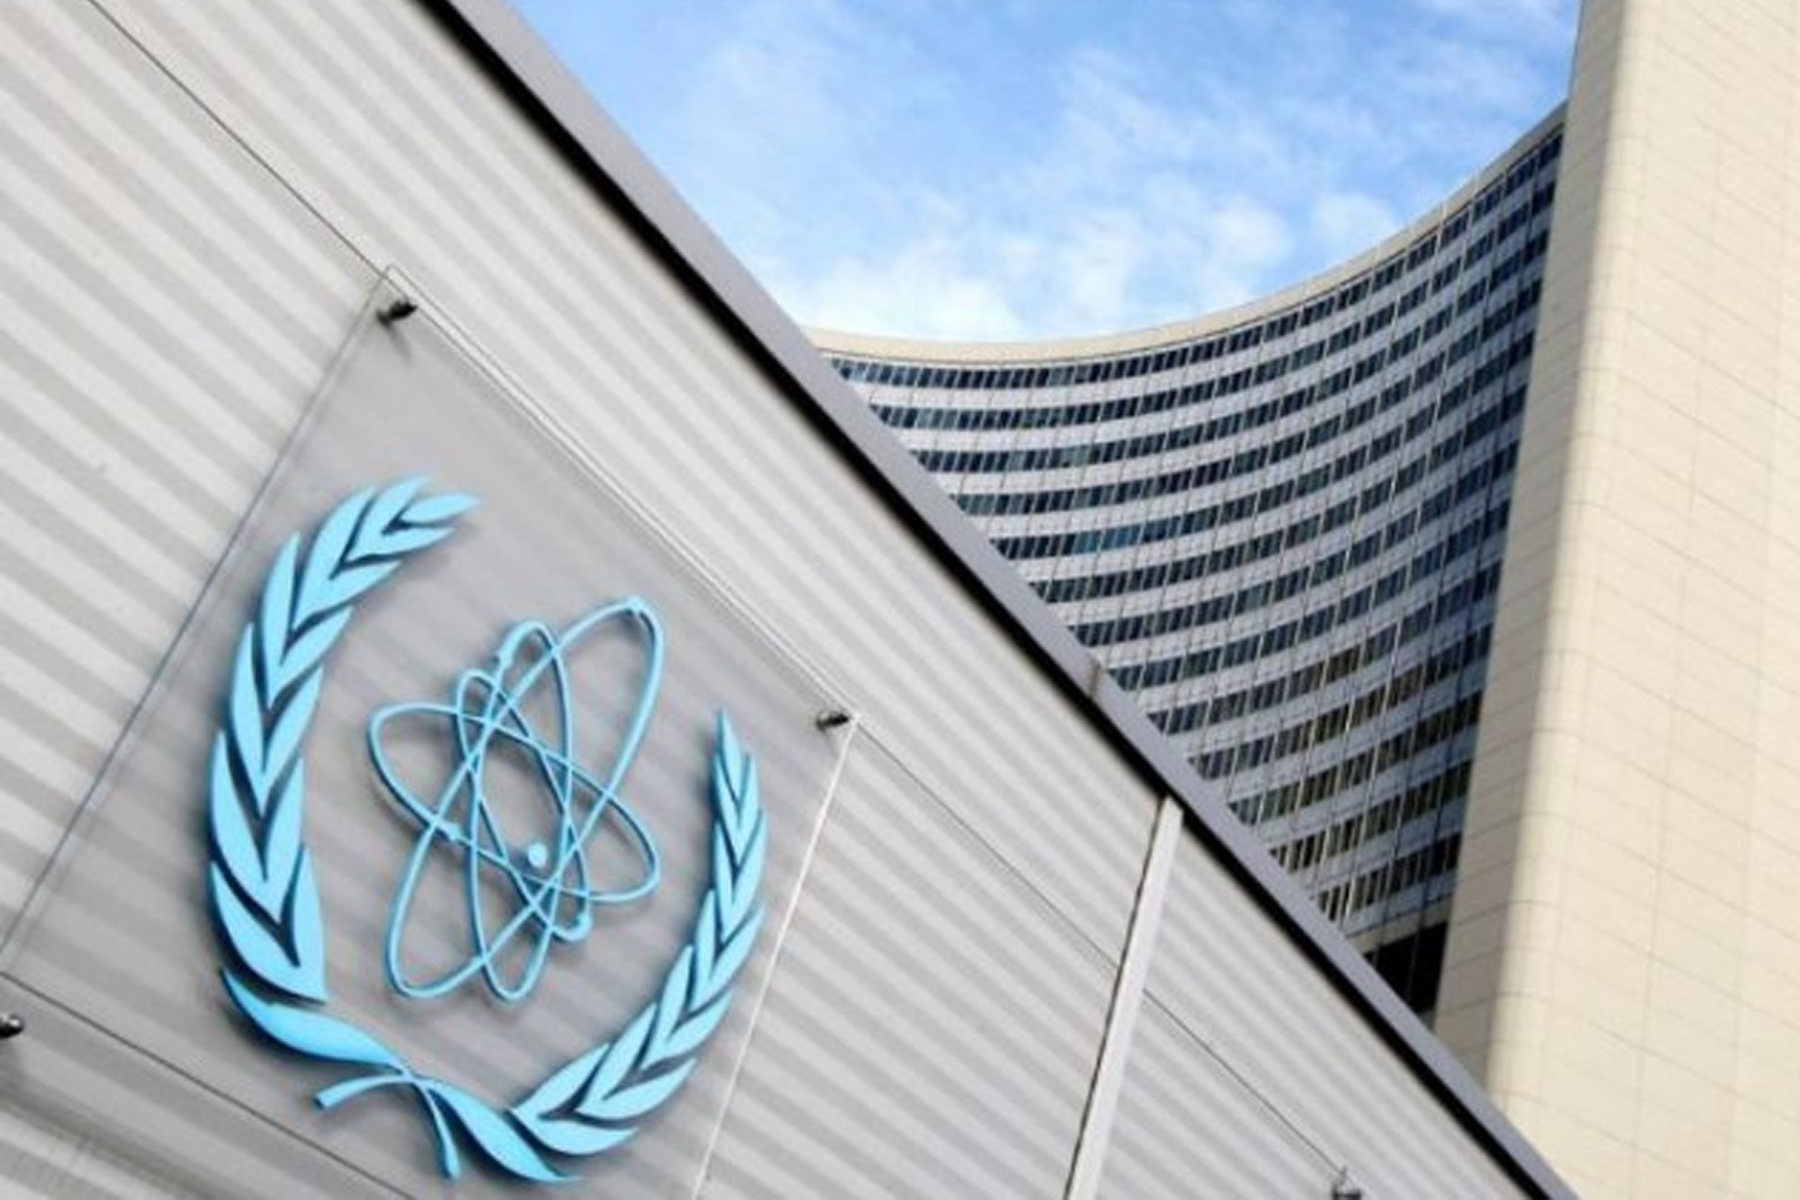 ایران در نامه ای به آژانس انرژی اتمی گفت اجرای داوطلبانه اقدامات برجام را متوقف میکند